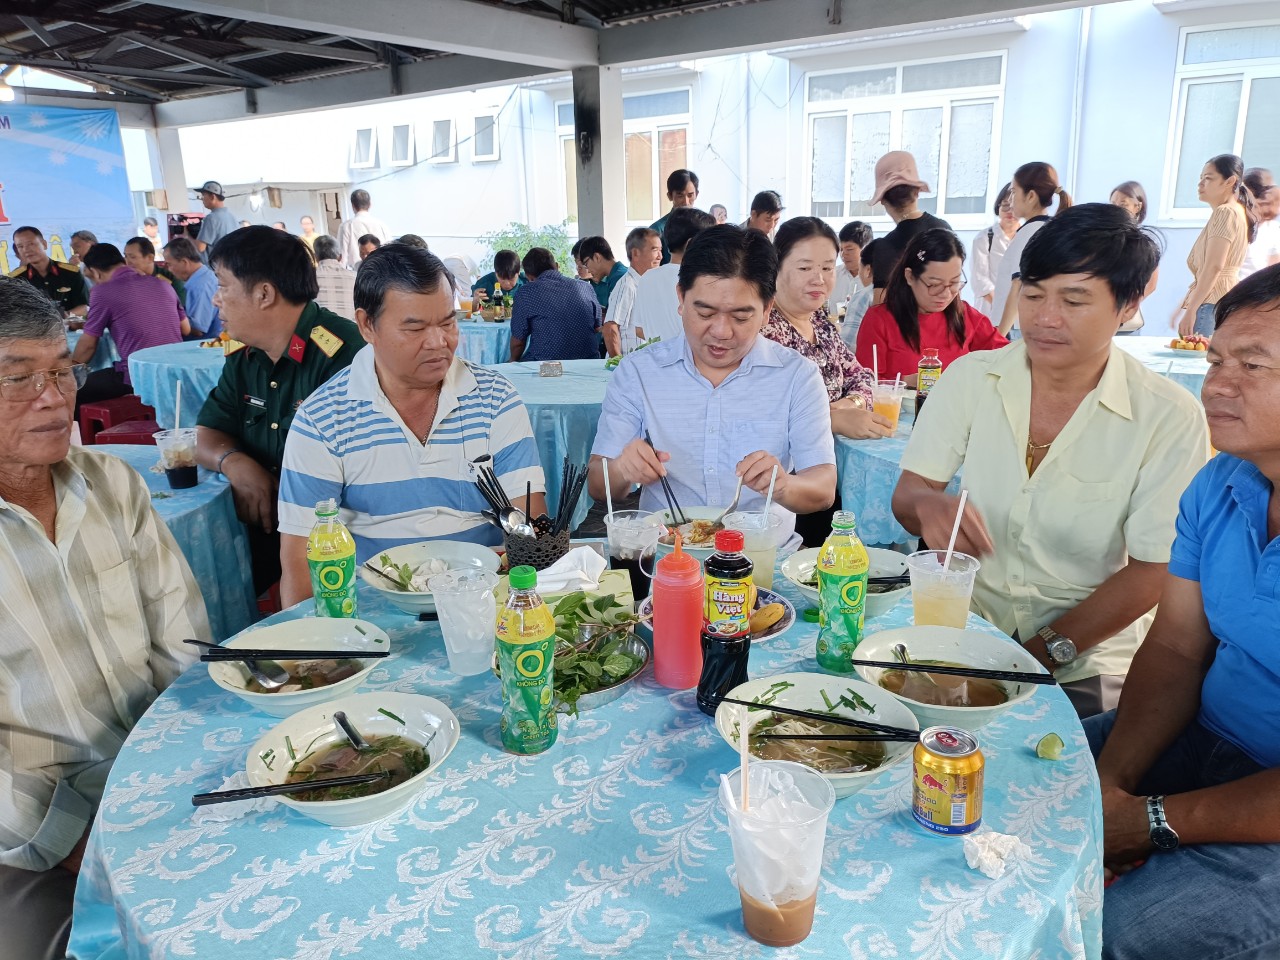 Phó Chủ tịch UBND huyện Đất Đỏ Võ Minh Tuấn (người ngồi giữa) ăn sáng cùng ngư dân sáng 18/11.